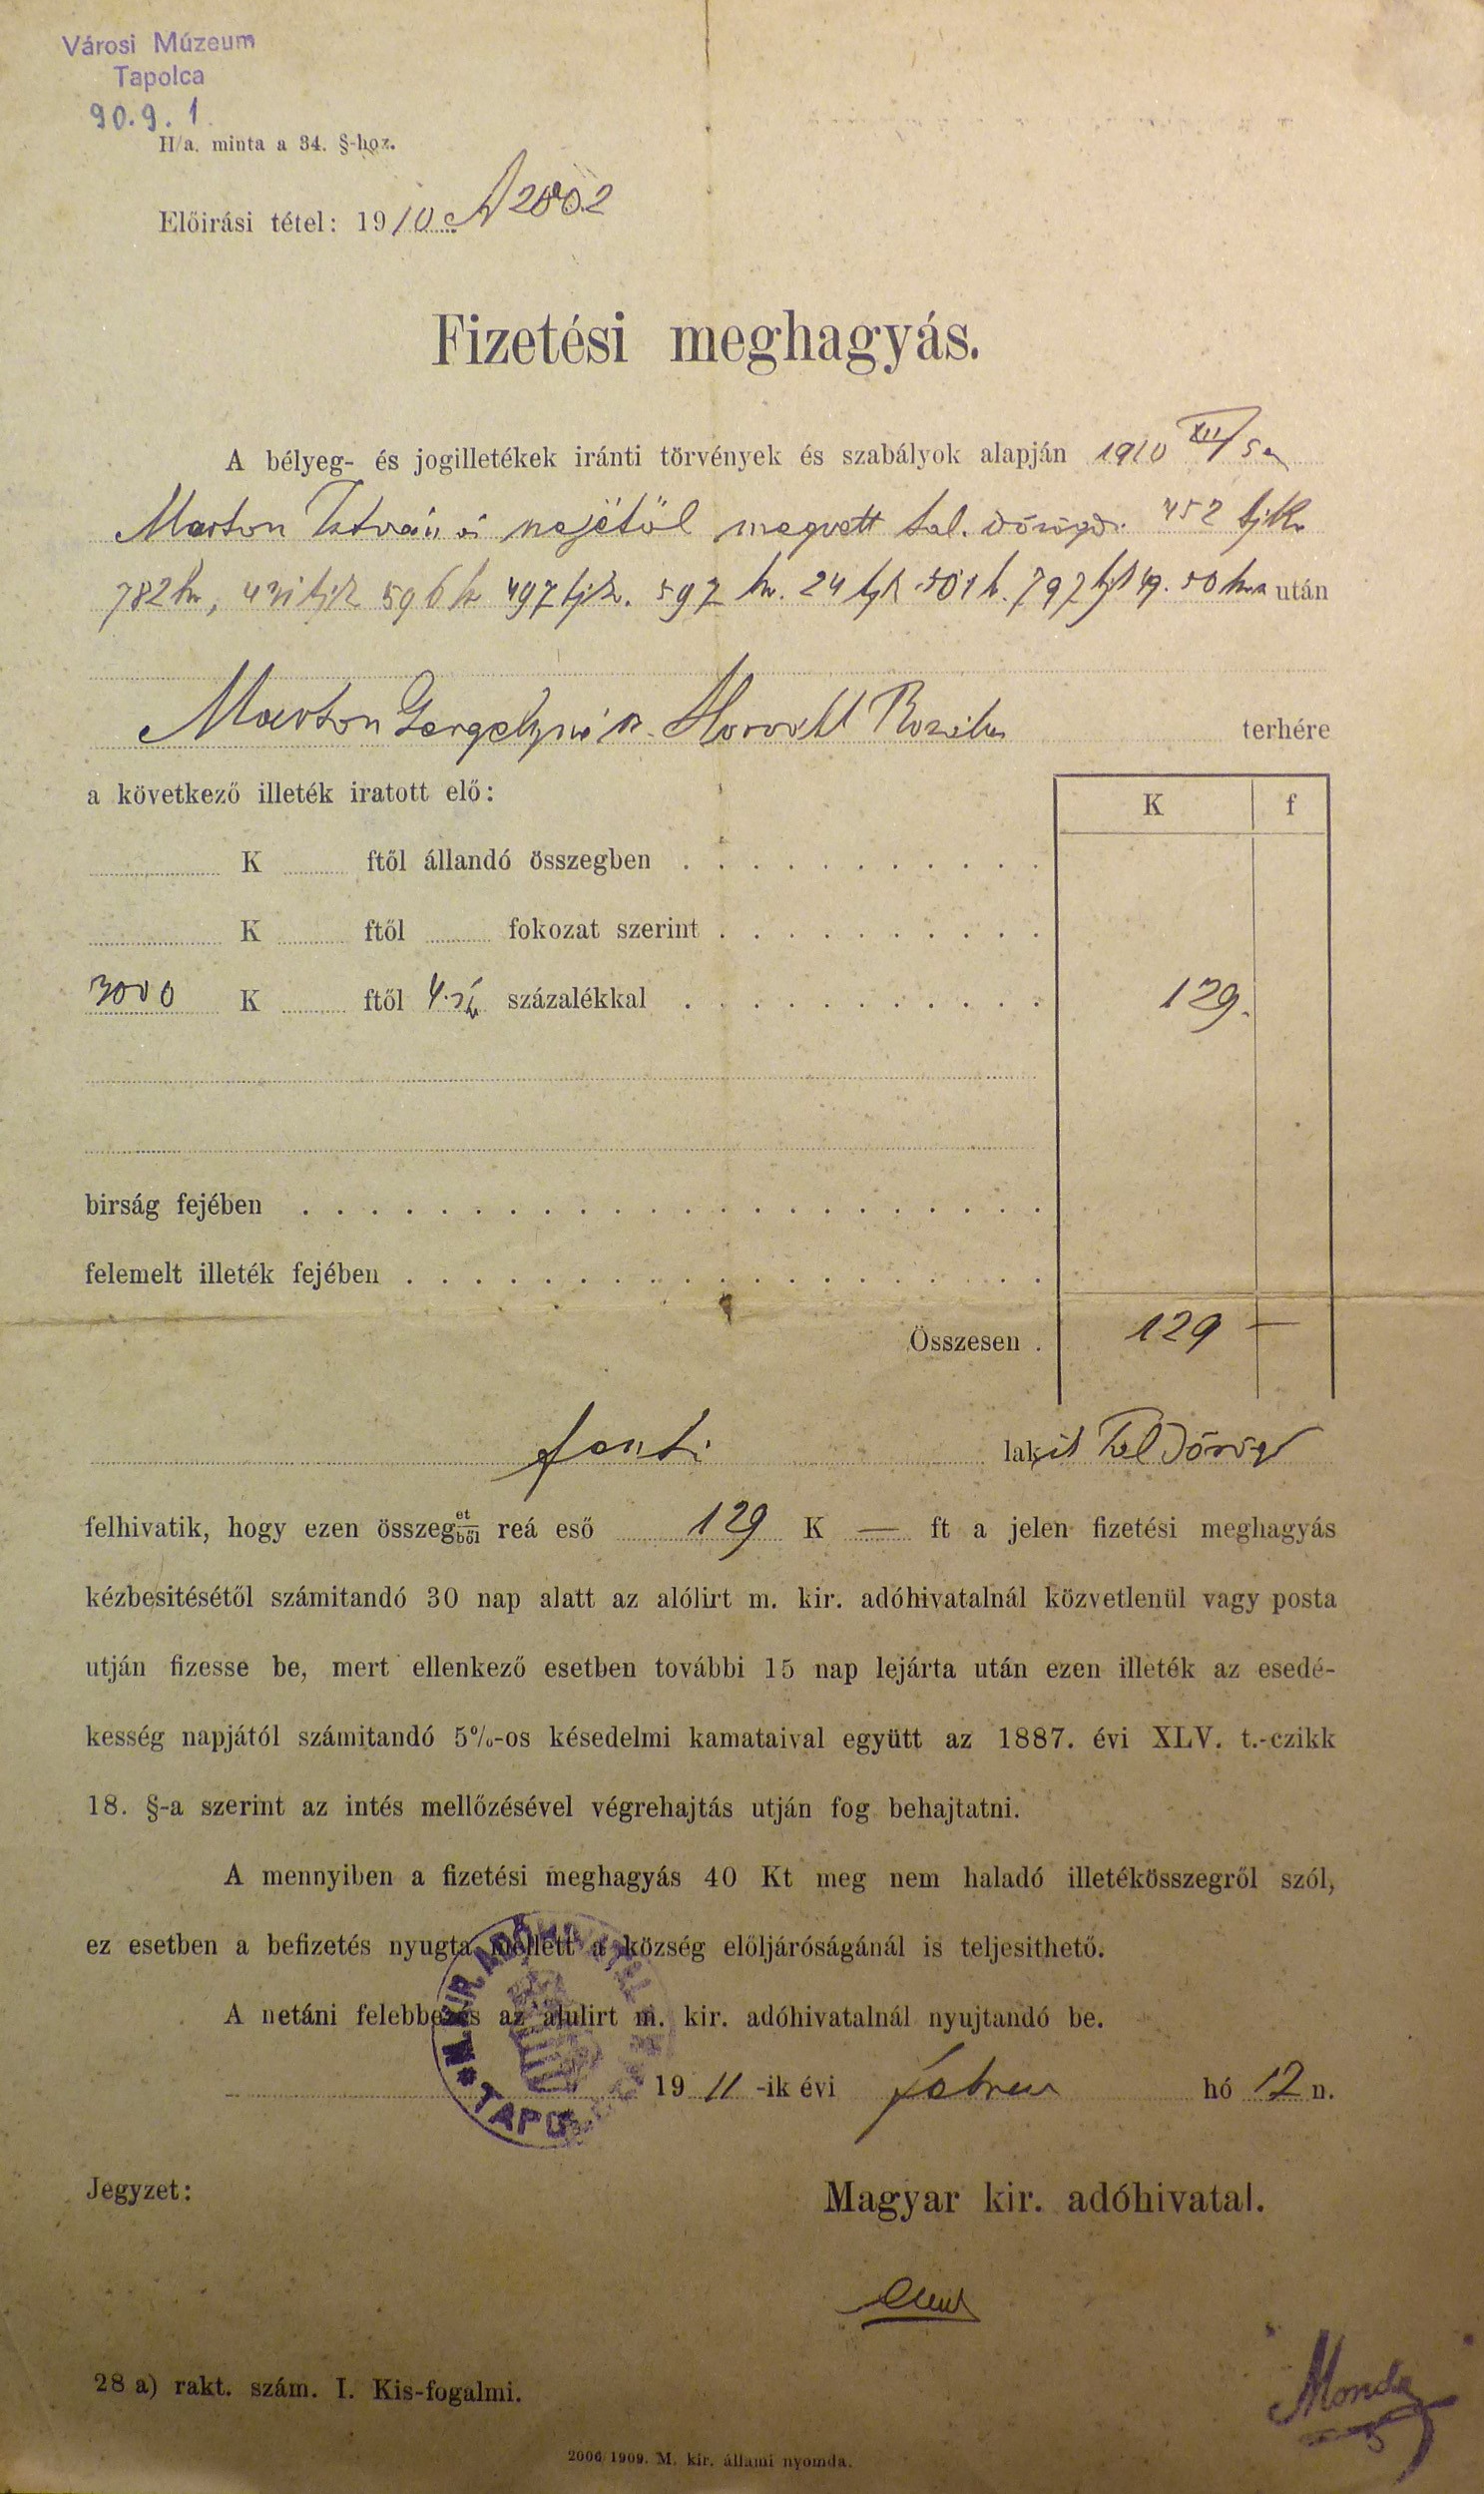 Fizetési meghagyás 1911 (Tapolcai Városi Múzeum CC BY-NC-SA)